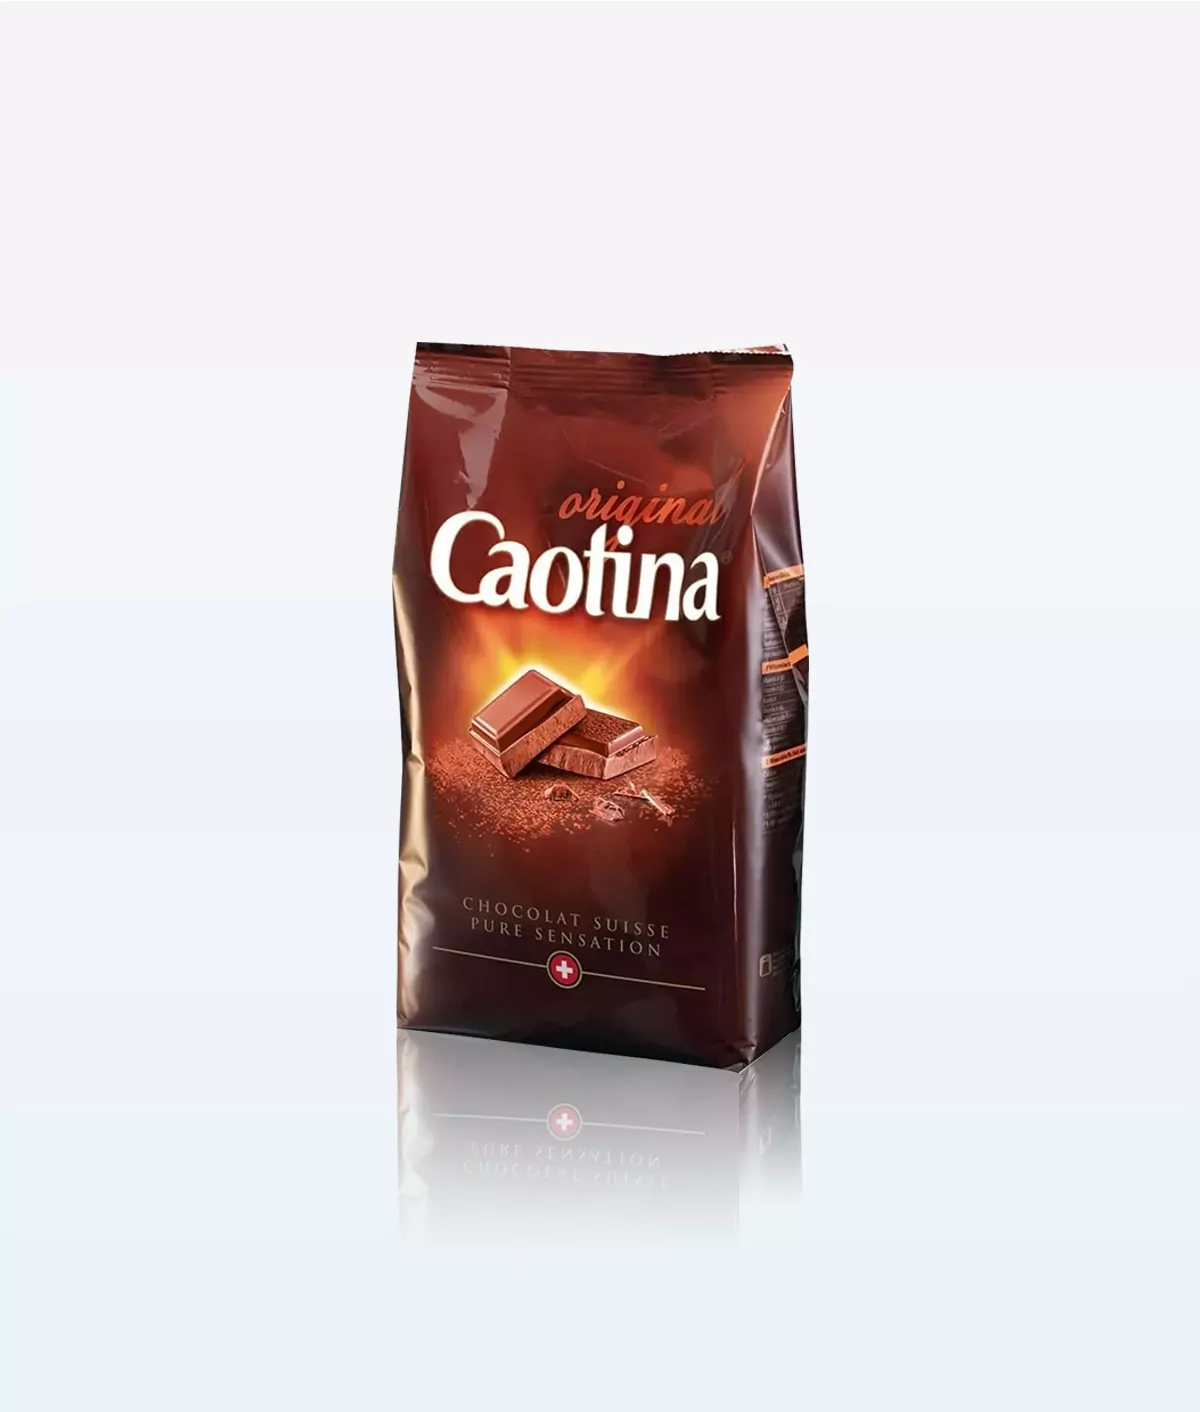 Poudre Caotina Original Chocolate